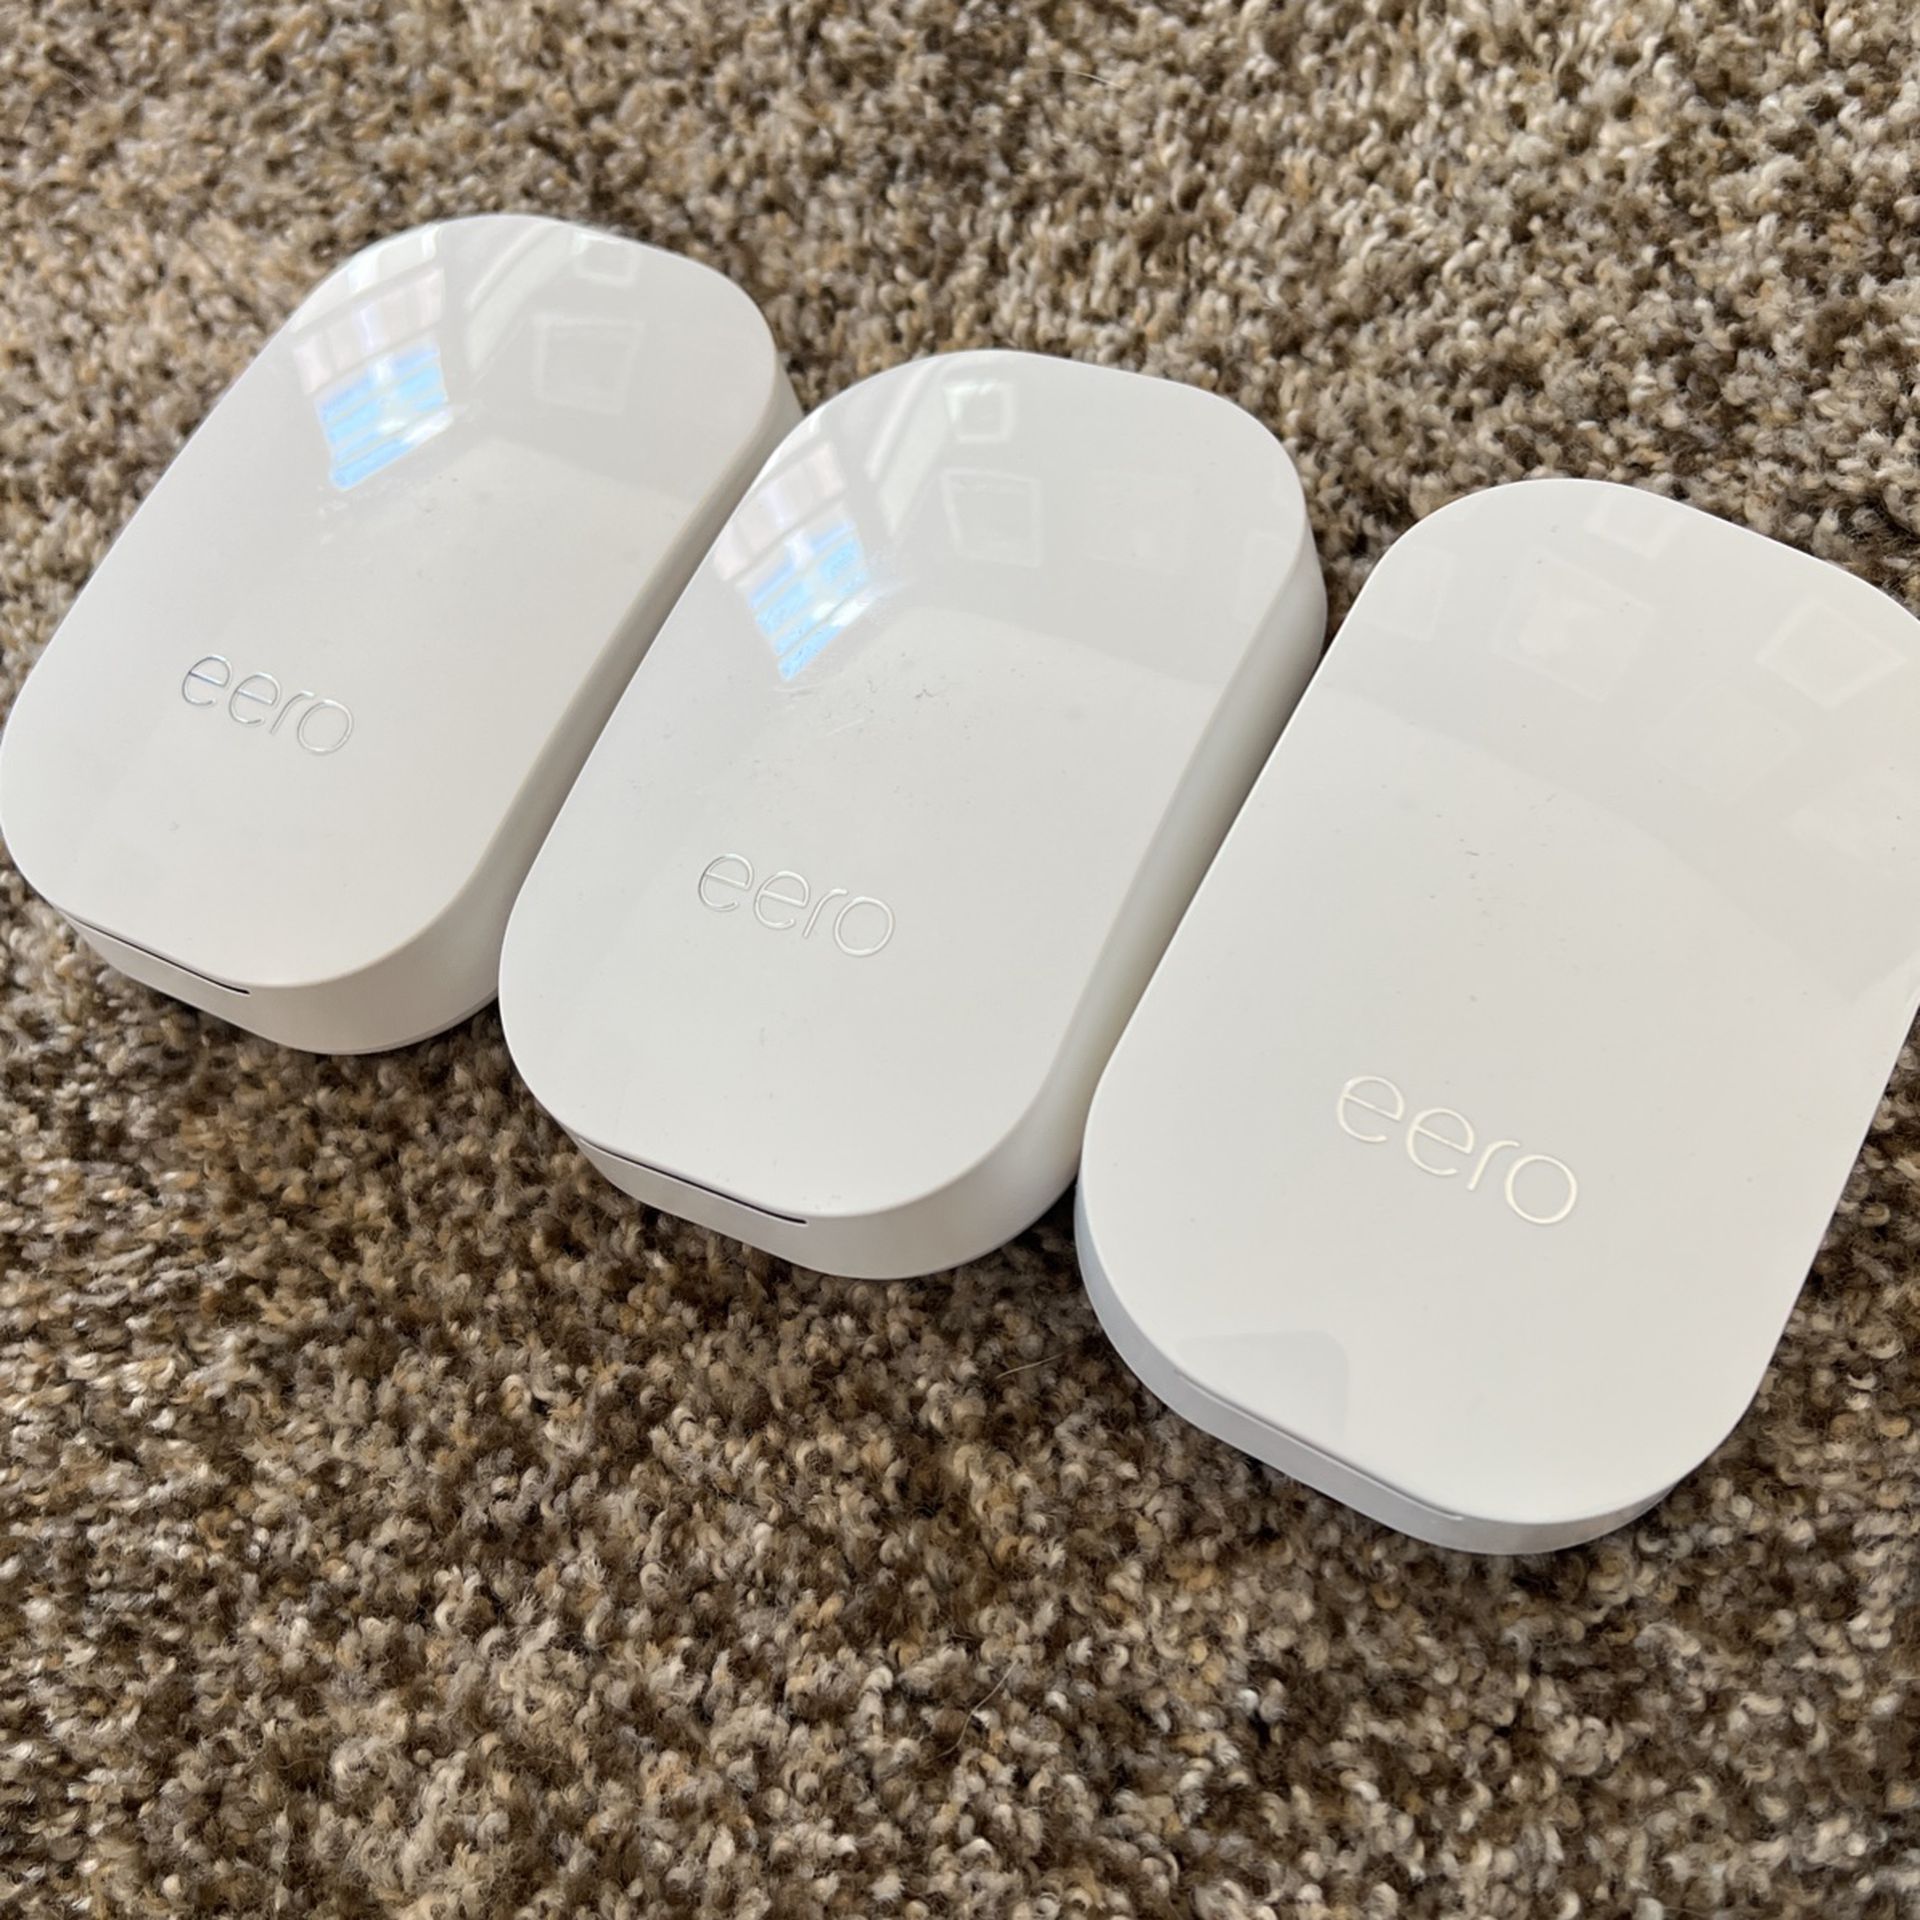 Eero Wi-Fi Extenders